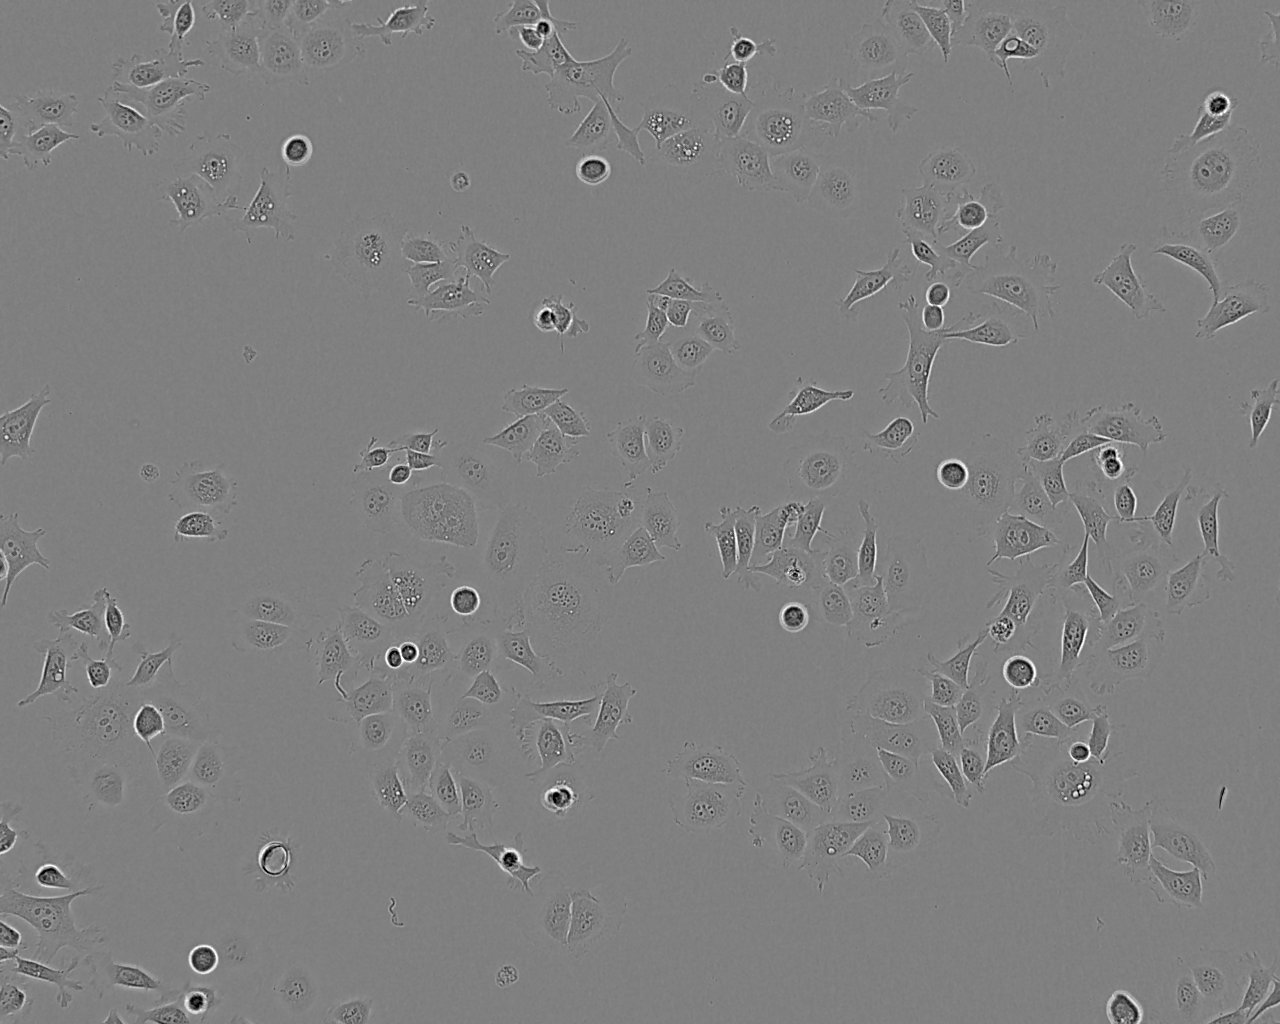 CG-4 epithelioid cells大鼠少突胶质前体细胞系